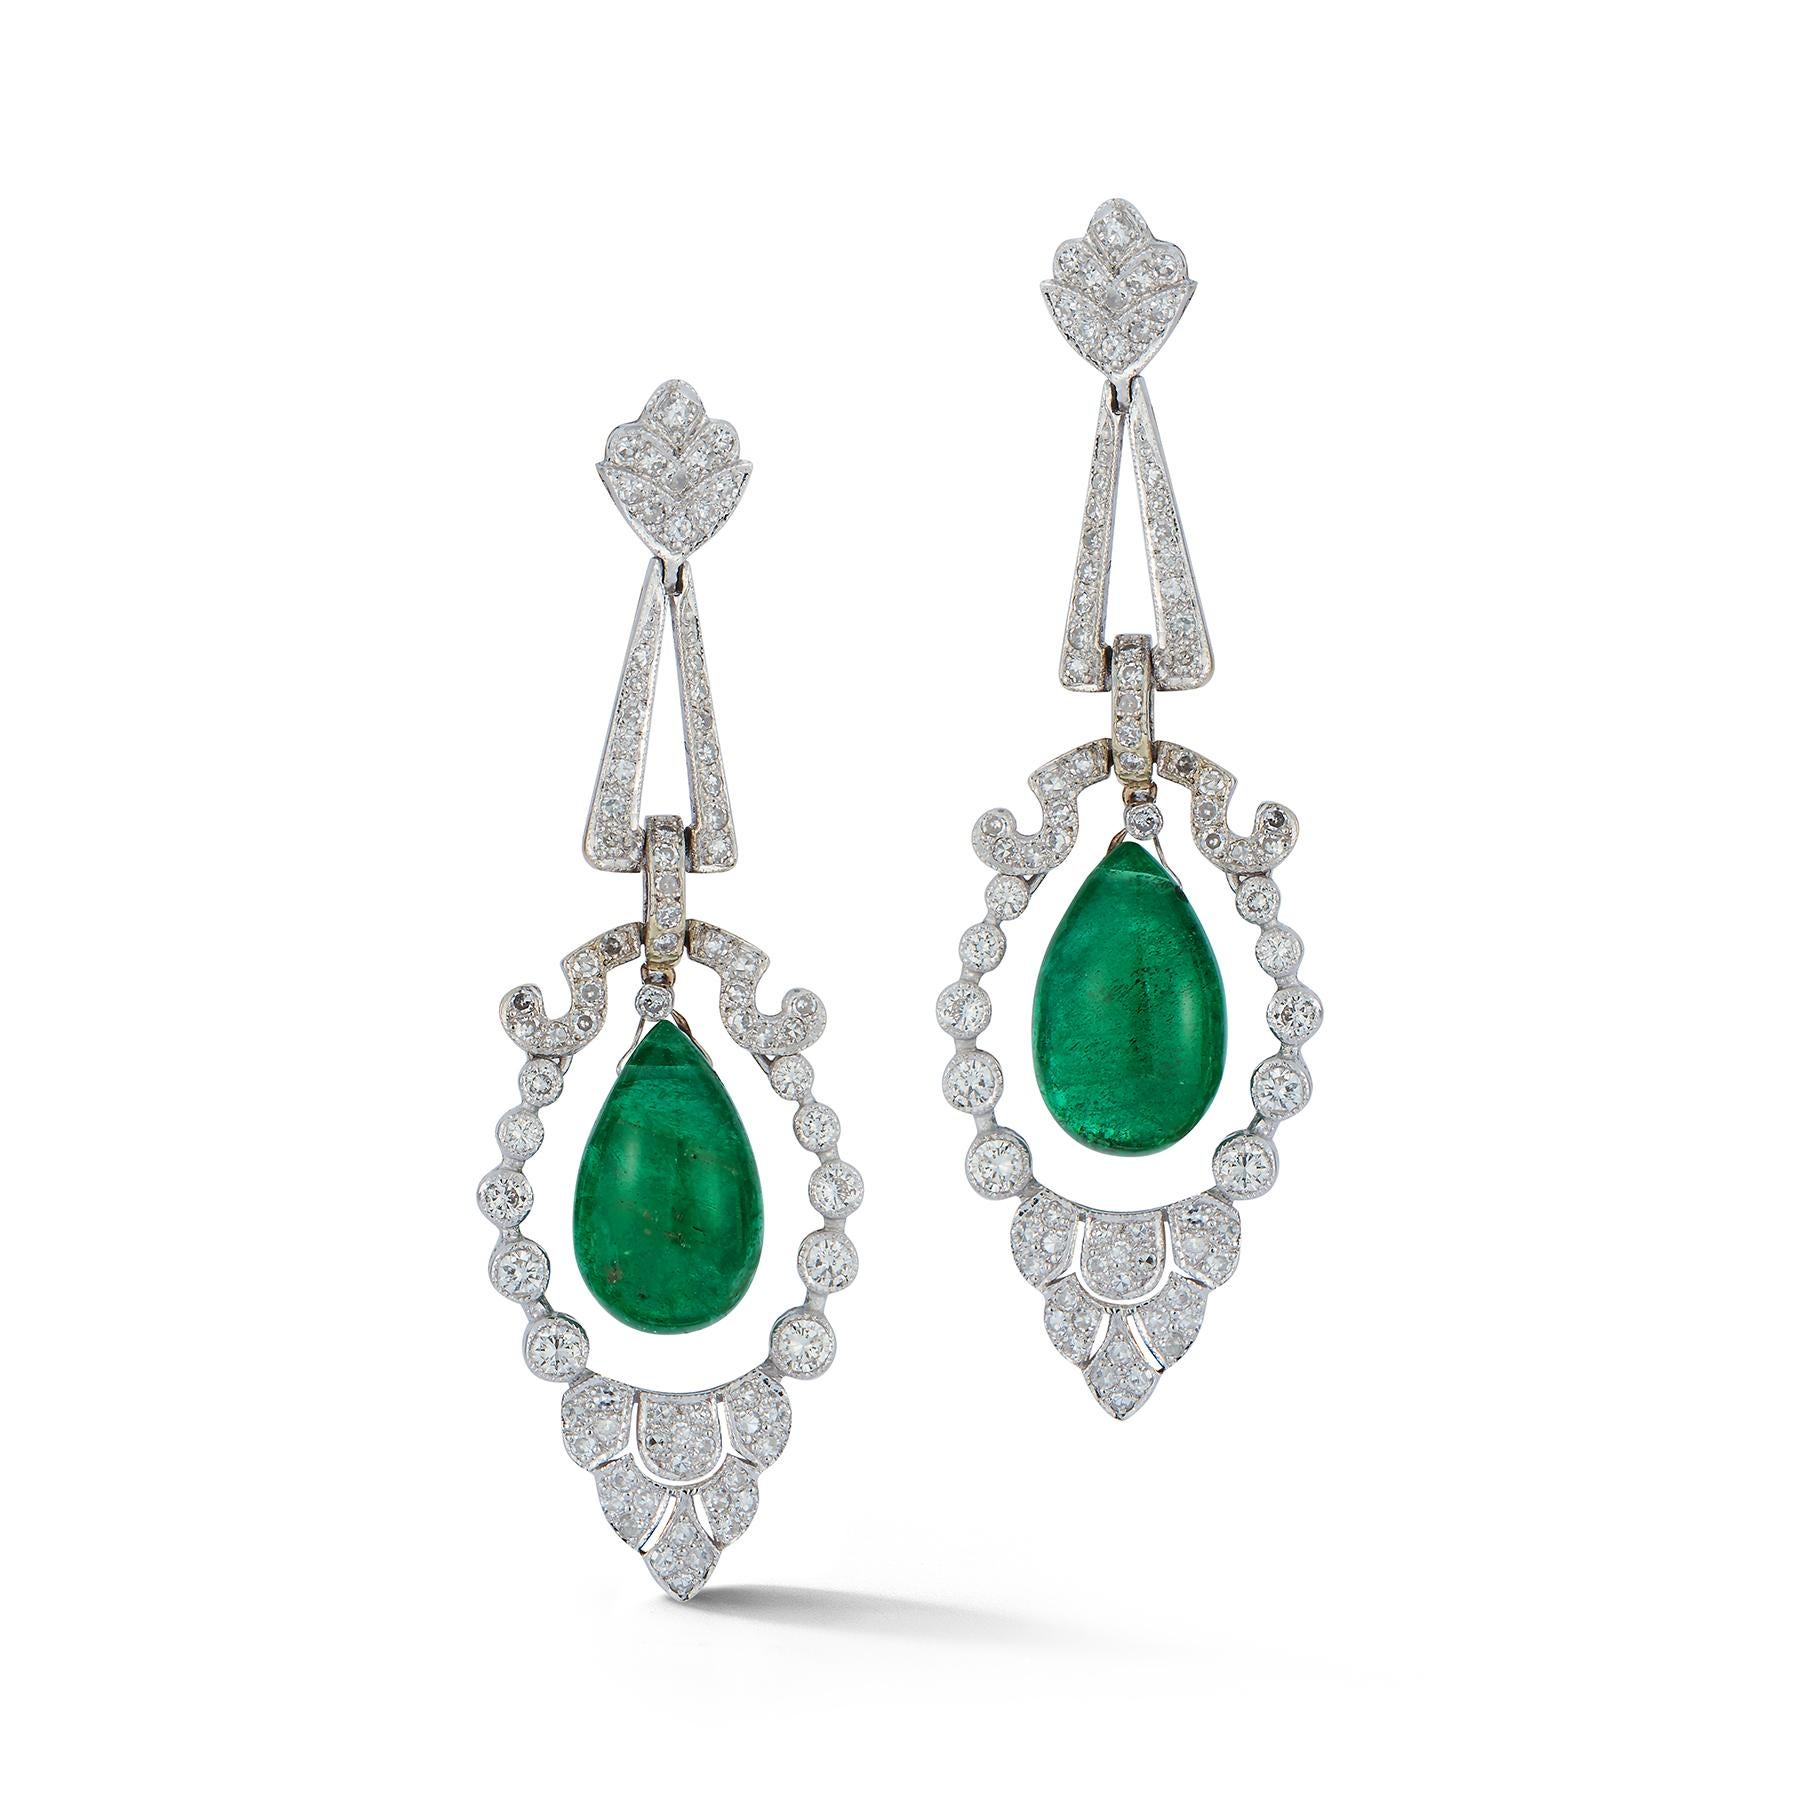 Smaragd & Diamant-Kronleuchter-Ohrringe

 2 Cabochon-Smaragdperlen mit Diamanten besetzt

Abmessungen: 2